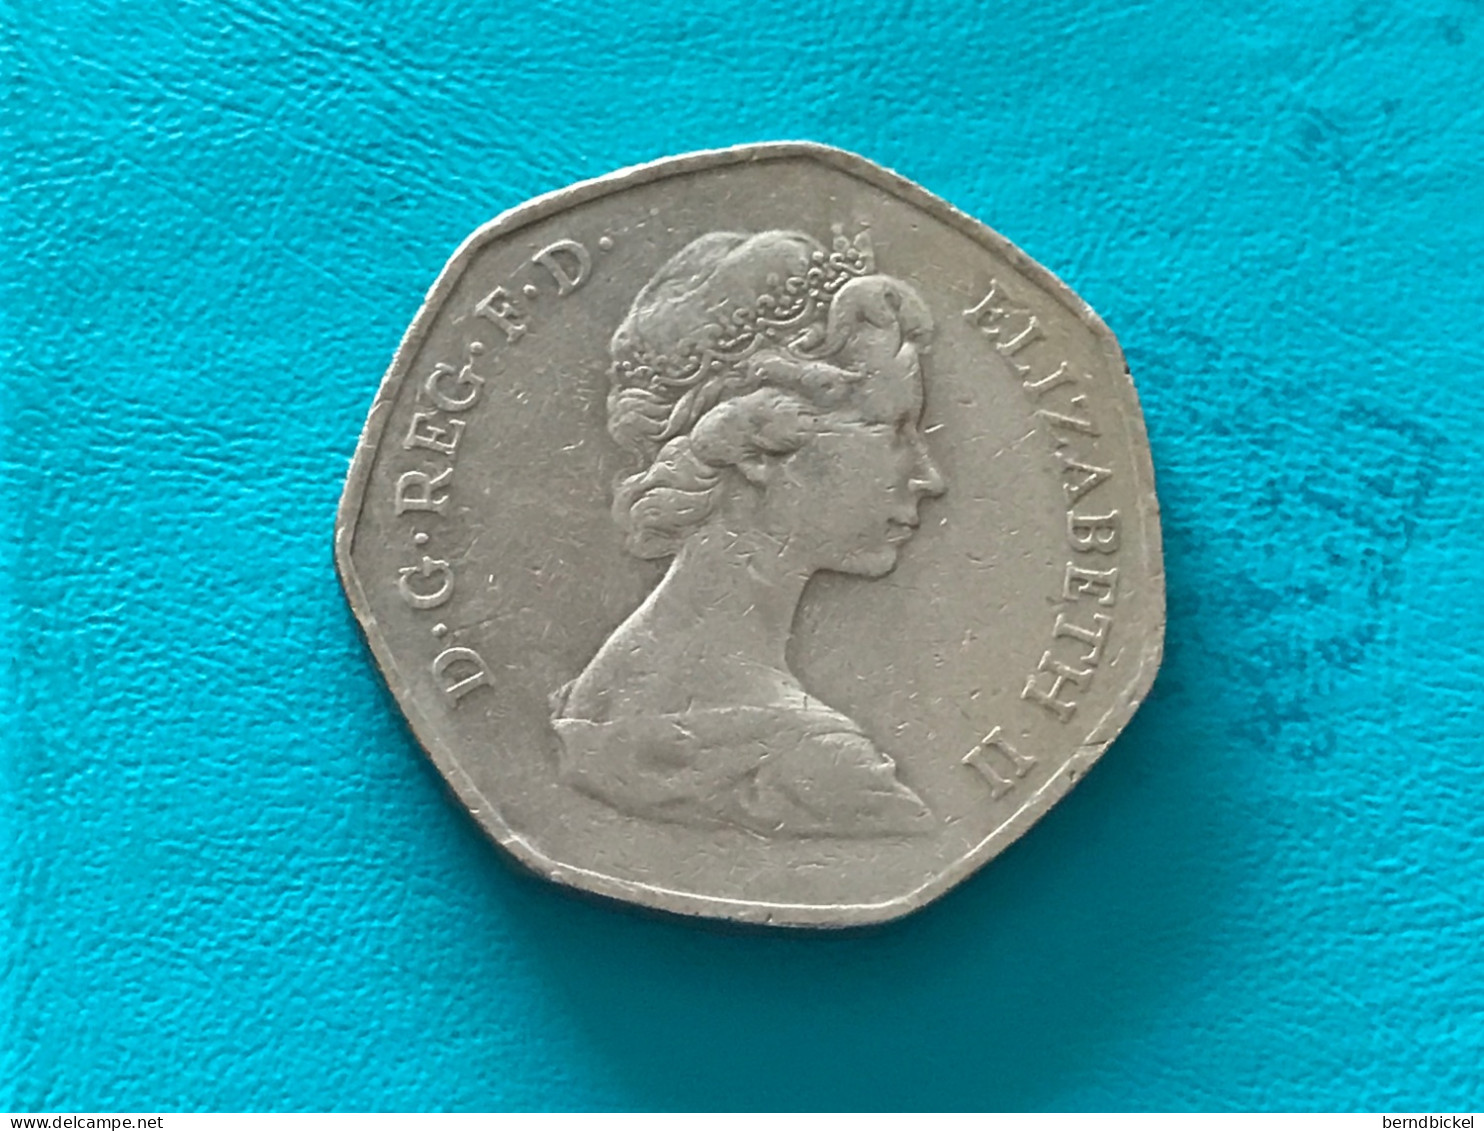 Münze Münzen Umlaufmünze Gedenkmünze Großbritannien 50 Pence 1973 EWG - 50 Pence